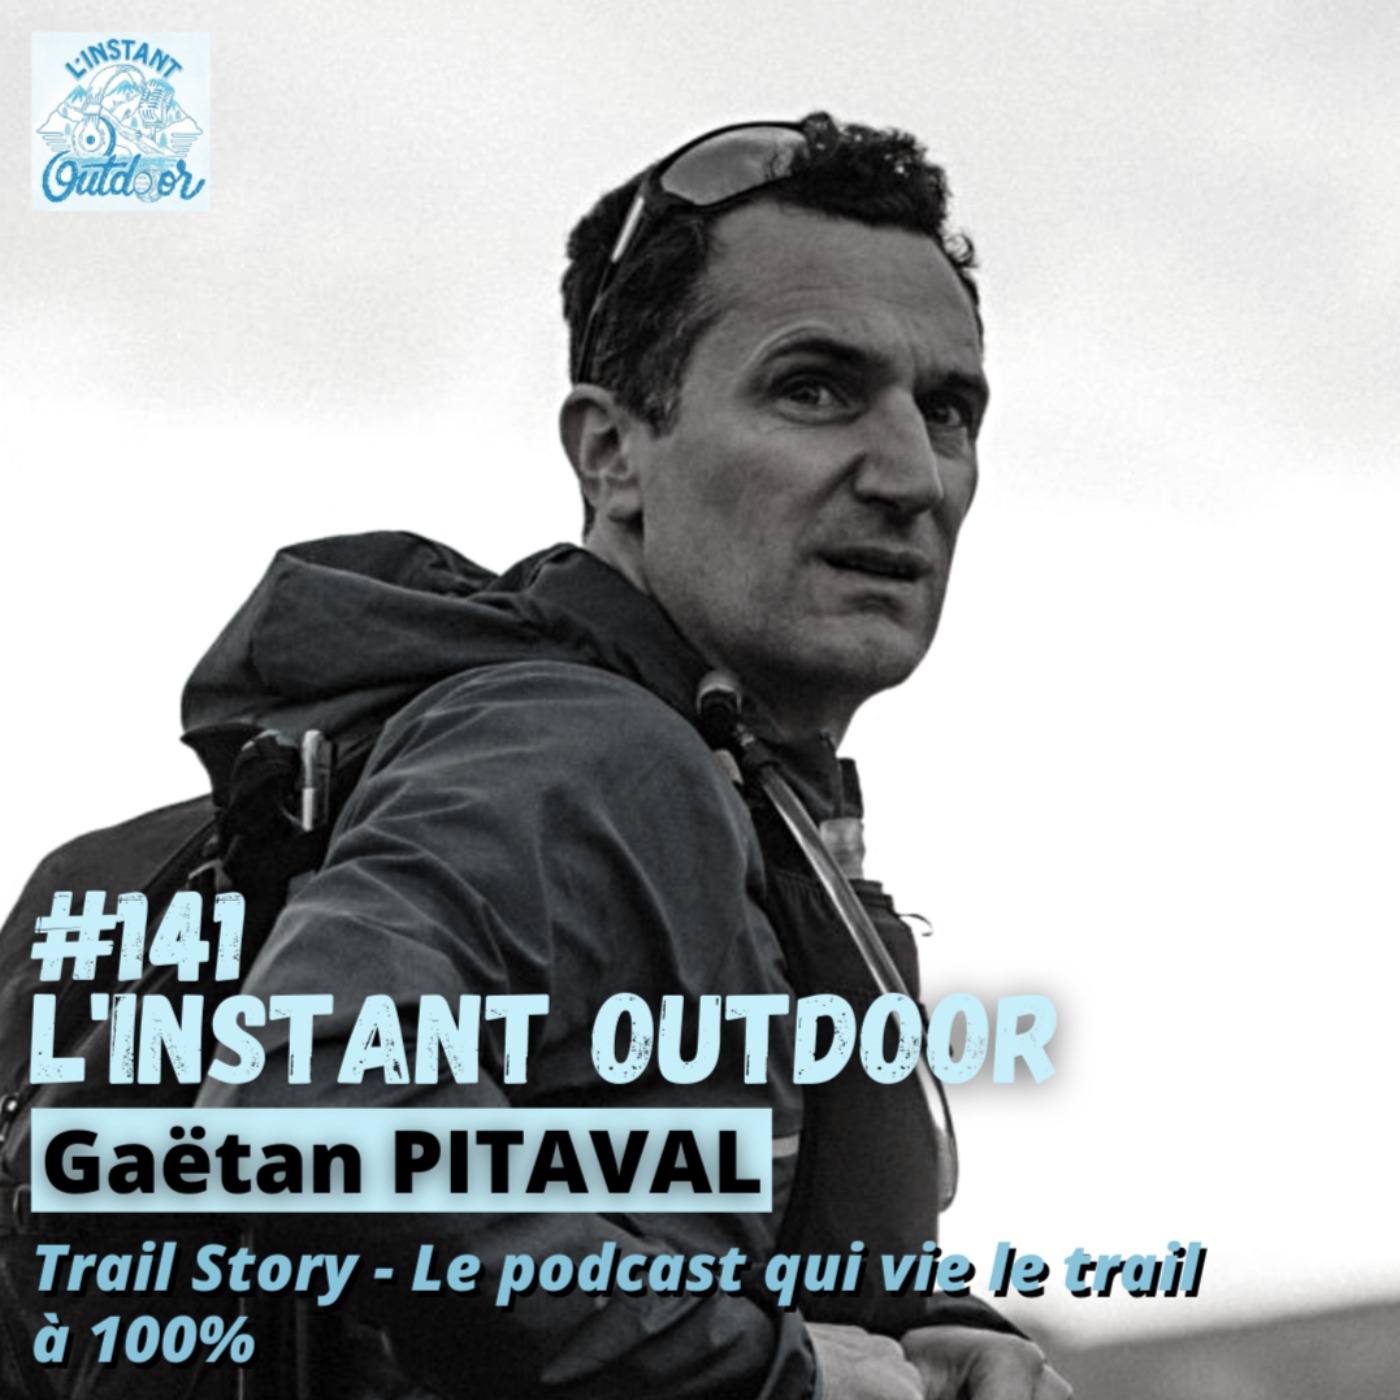 Trail Story - Le podcast qui vit le trail à 100%